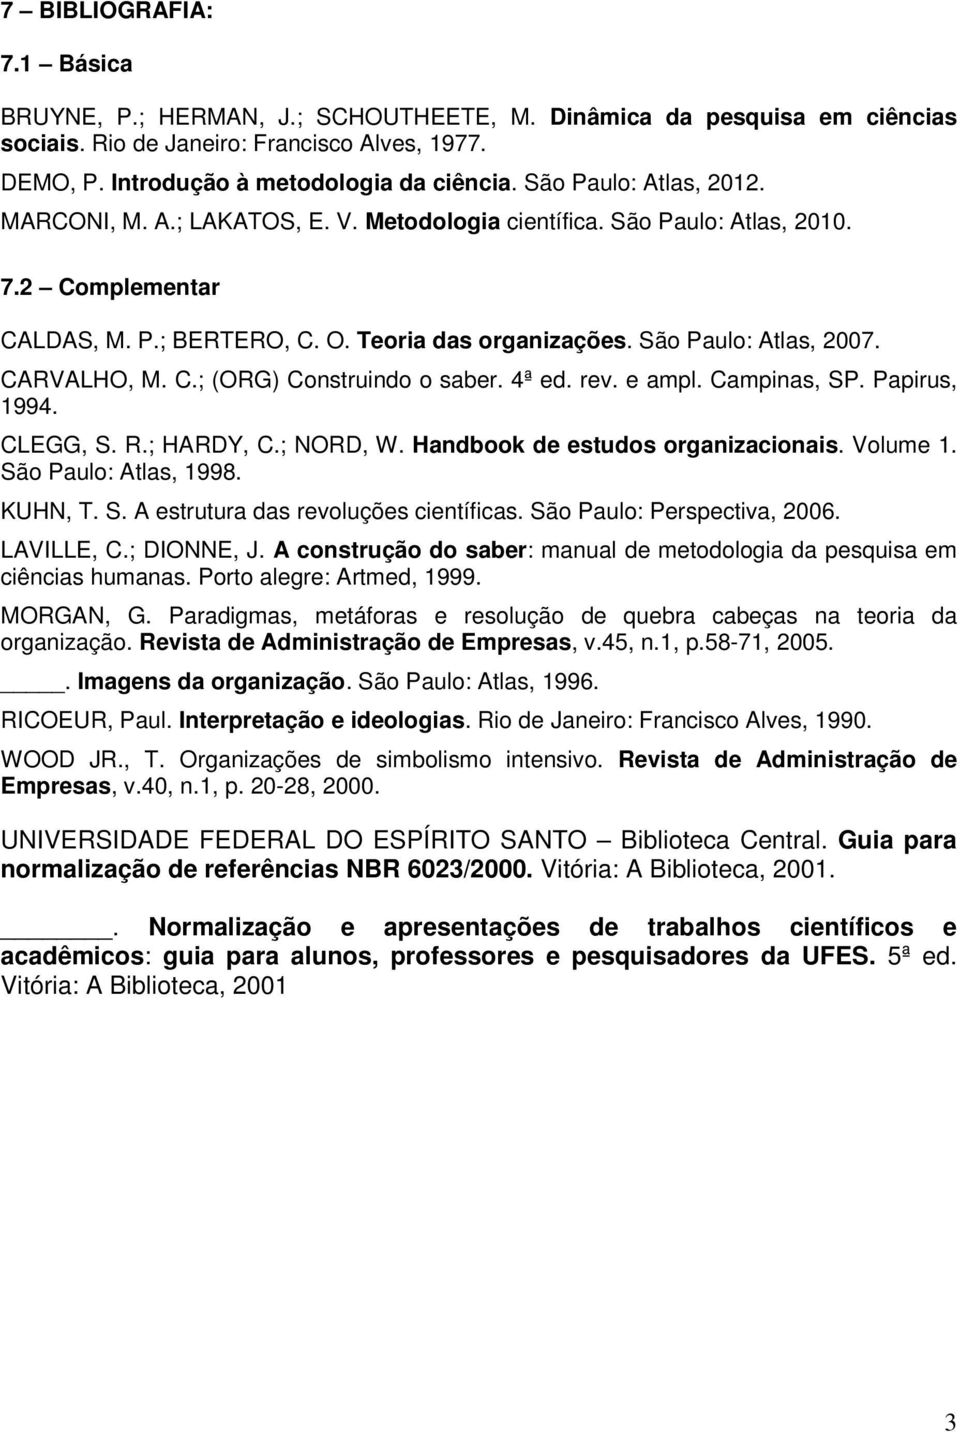 4ª ed. rev. e ampl. Campinas, SP. Papirus, 1994. CLEGG, S. R.; HARDY, C.; NORD, W. Handbook de estudos organizacionais. Volume 1. São Paulo: Atlas, 1998. KUHN, T. S. A estrutura das revoluções científicas.